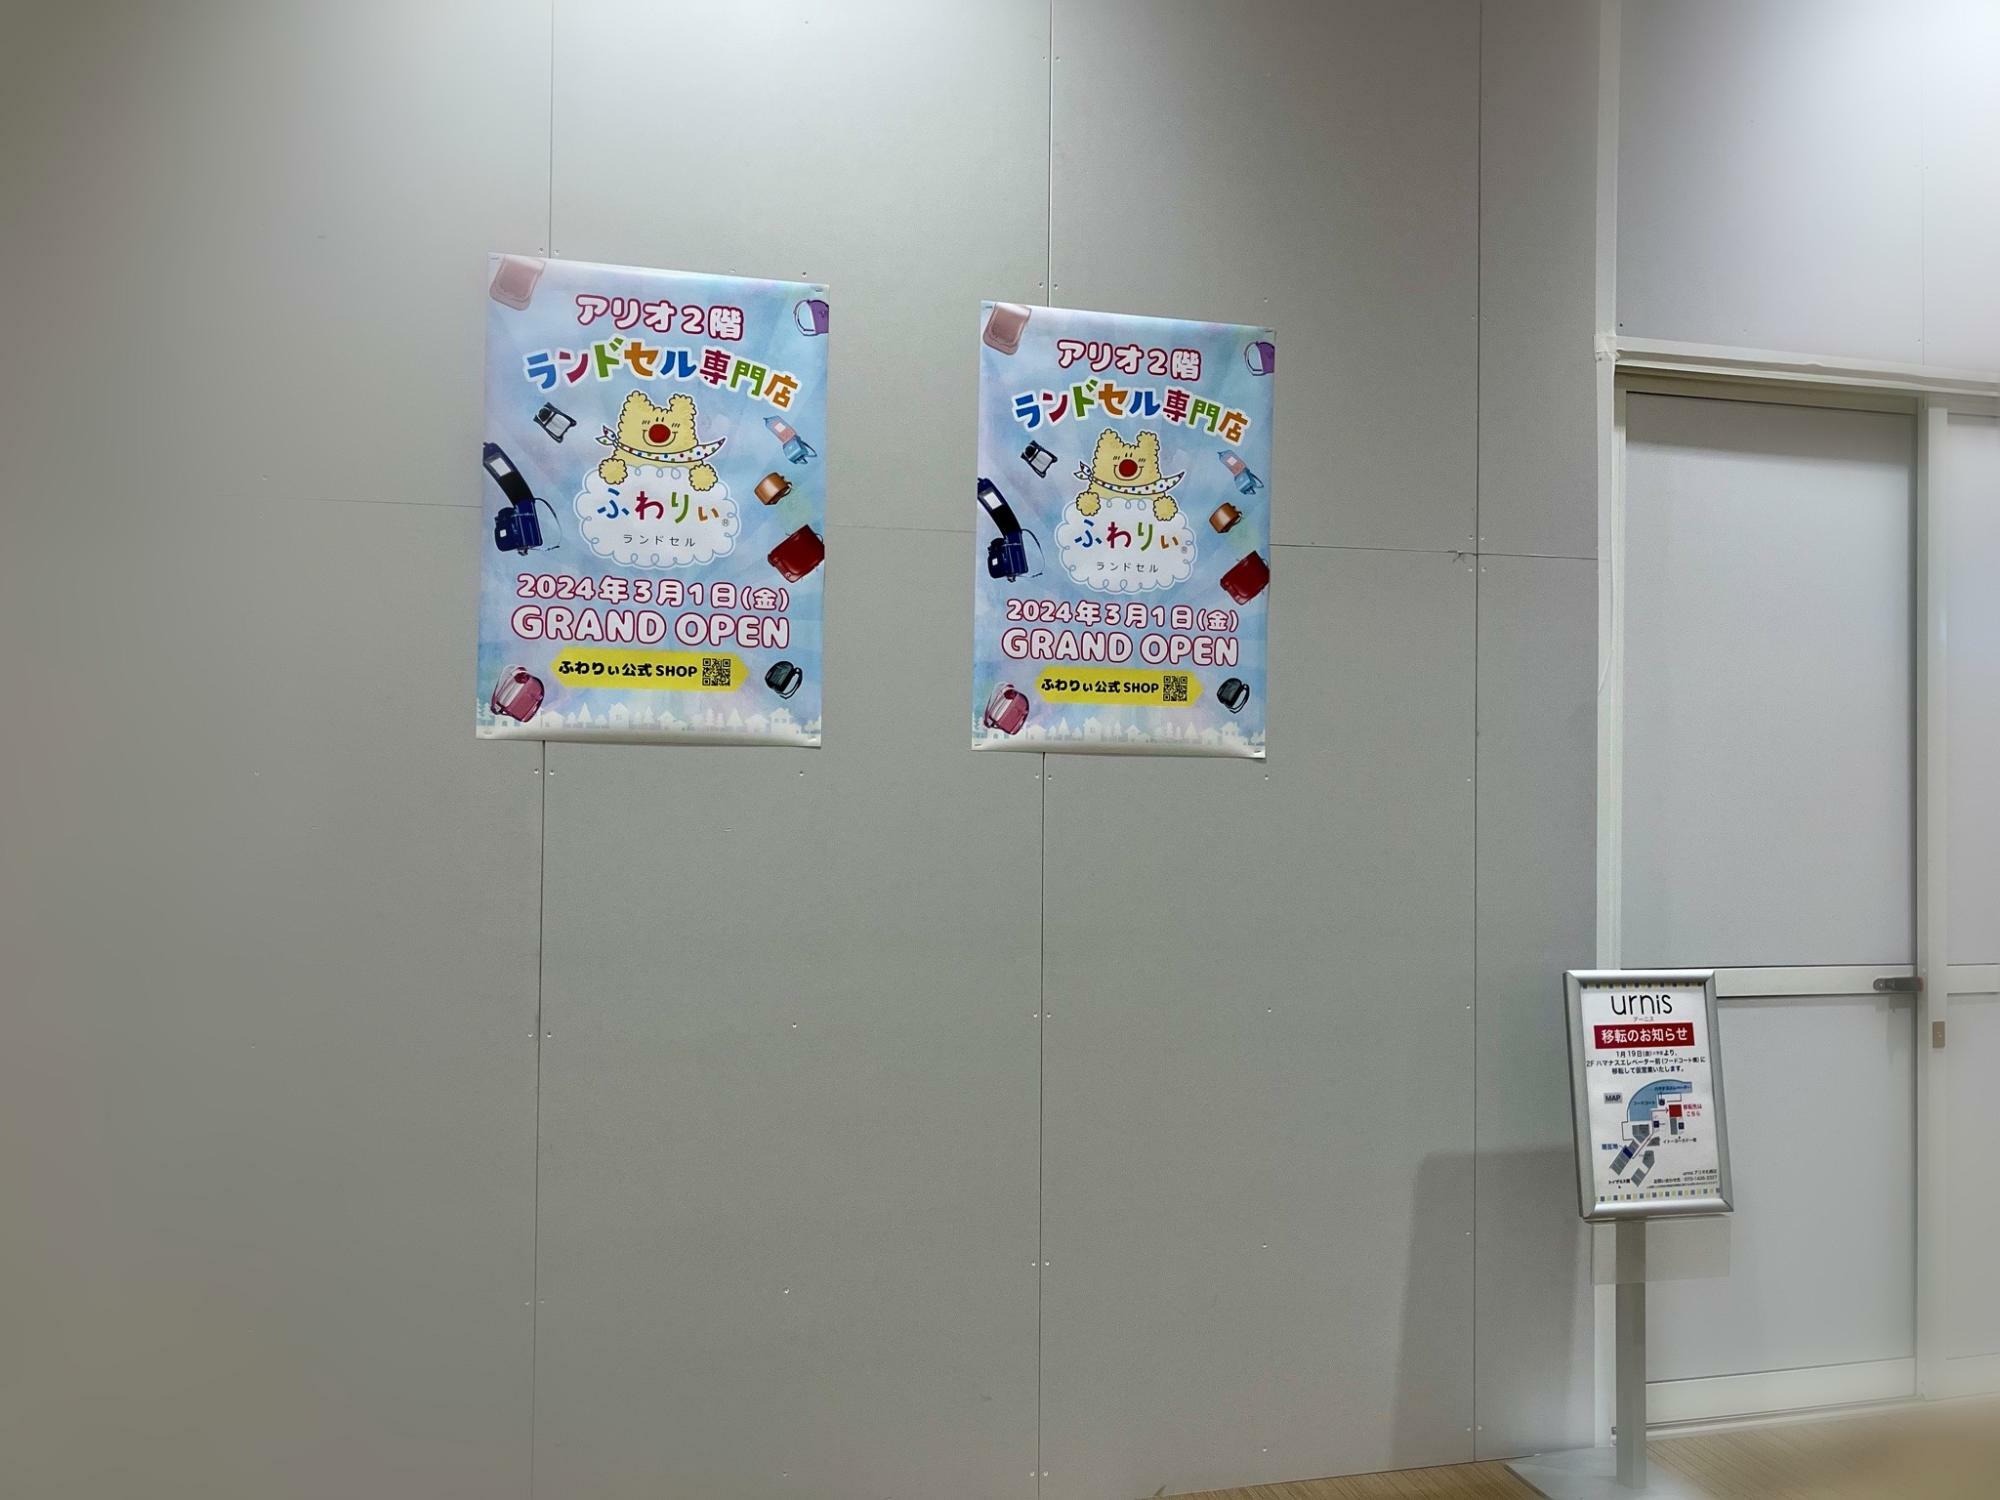 「アリオ札幌」専門店街2階にオープンのお知らせを見つけましたよ！